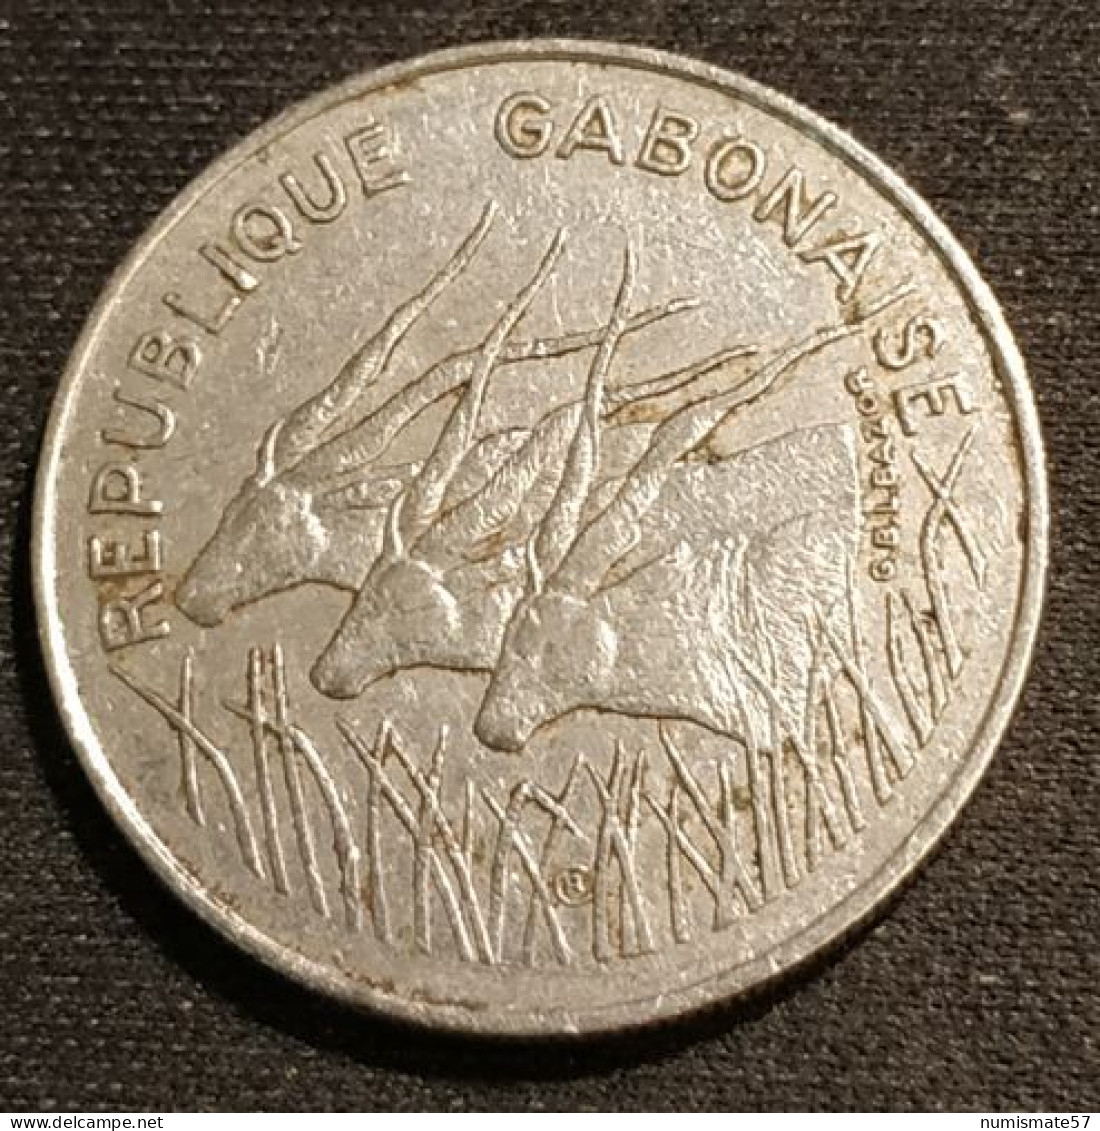 RARE - GABON - 100 FRANCS 1971 - KM 12 - Gabón